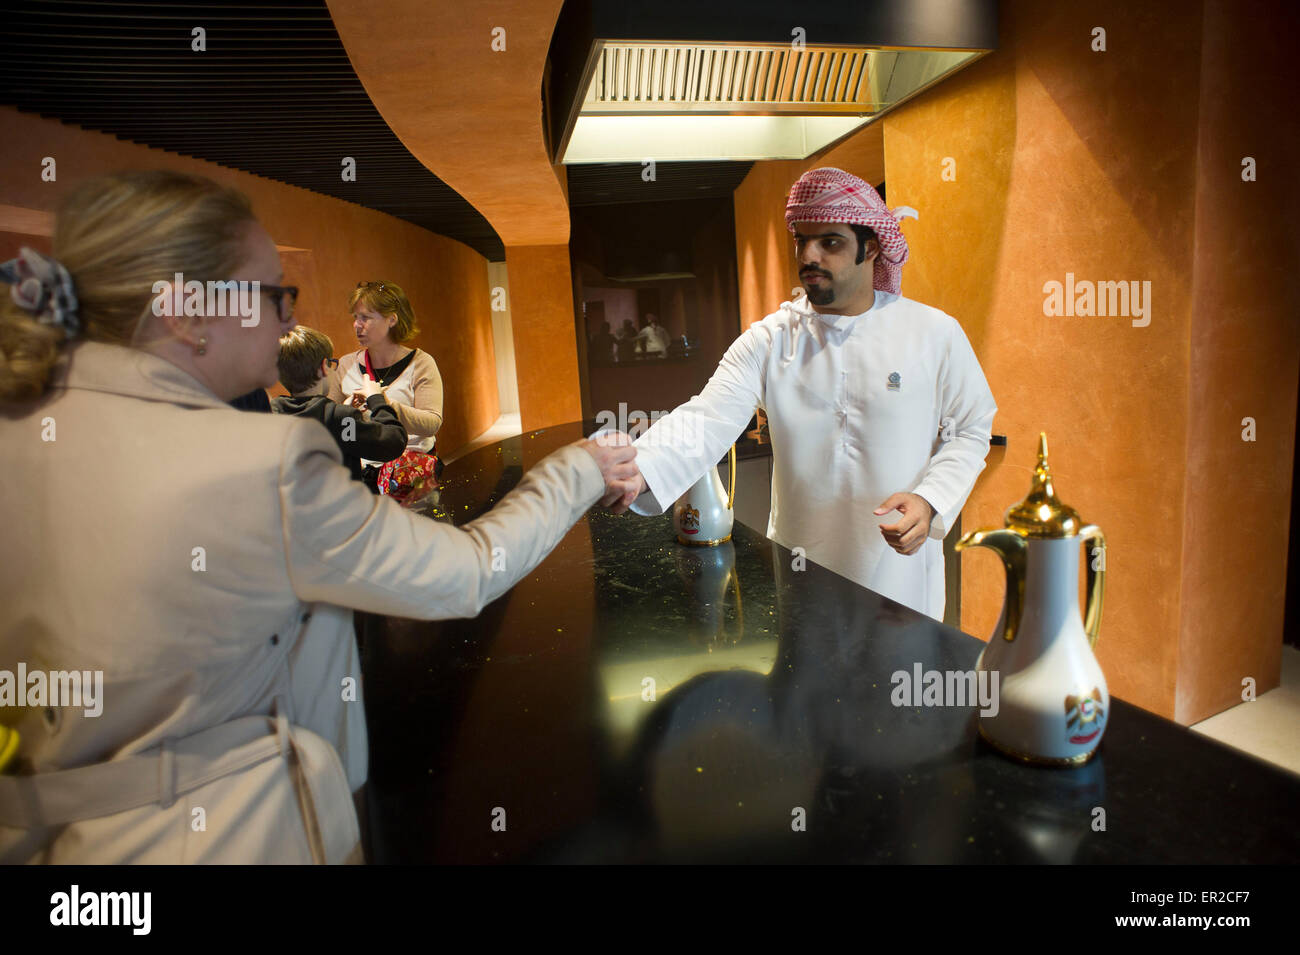 Italia Milano Expo 2015 Pavilion Emirati arabi uniti, offrendo tè per gli ospiti Foto Stock